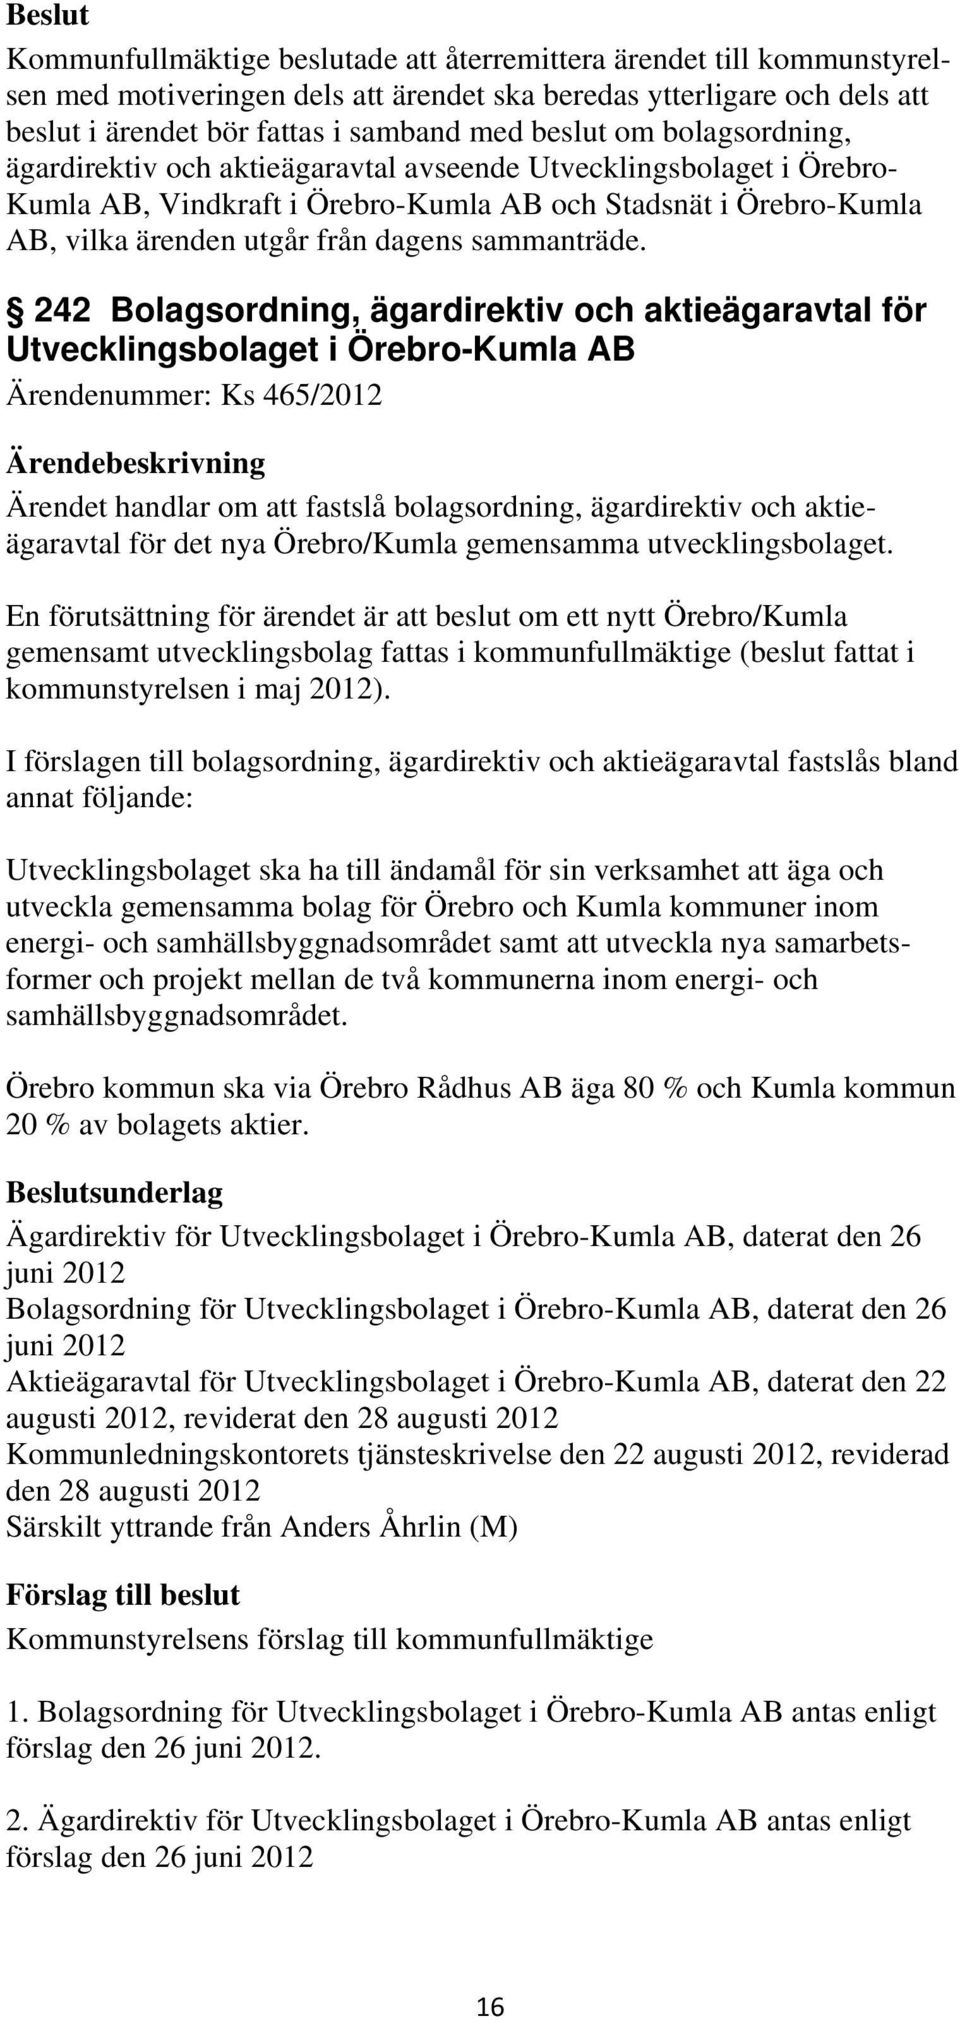 242 Bolagsordning, ägardirektiv och aktieägaravtal för Utvecklingsbolaget i Örebro-Kumla AB Ärendenummer: Ks 465/2012 Ärendet handlar om att fastslå bolagsordning, ägardirektiv och aktieägaravtal för